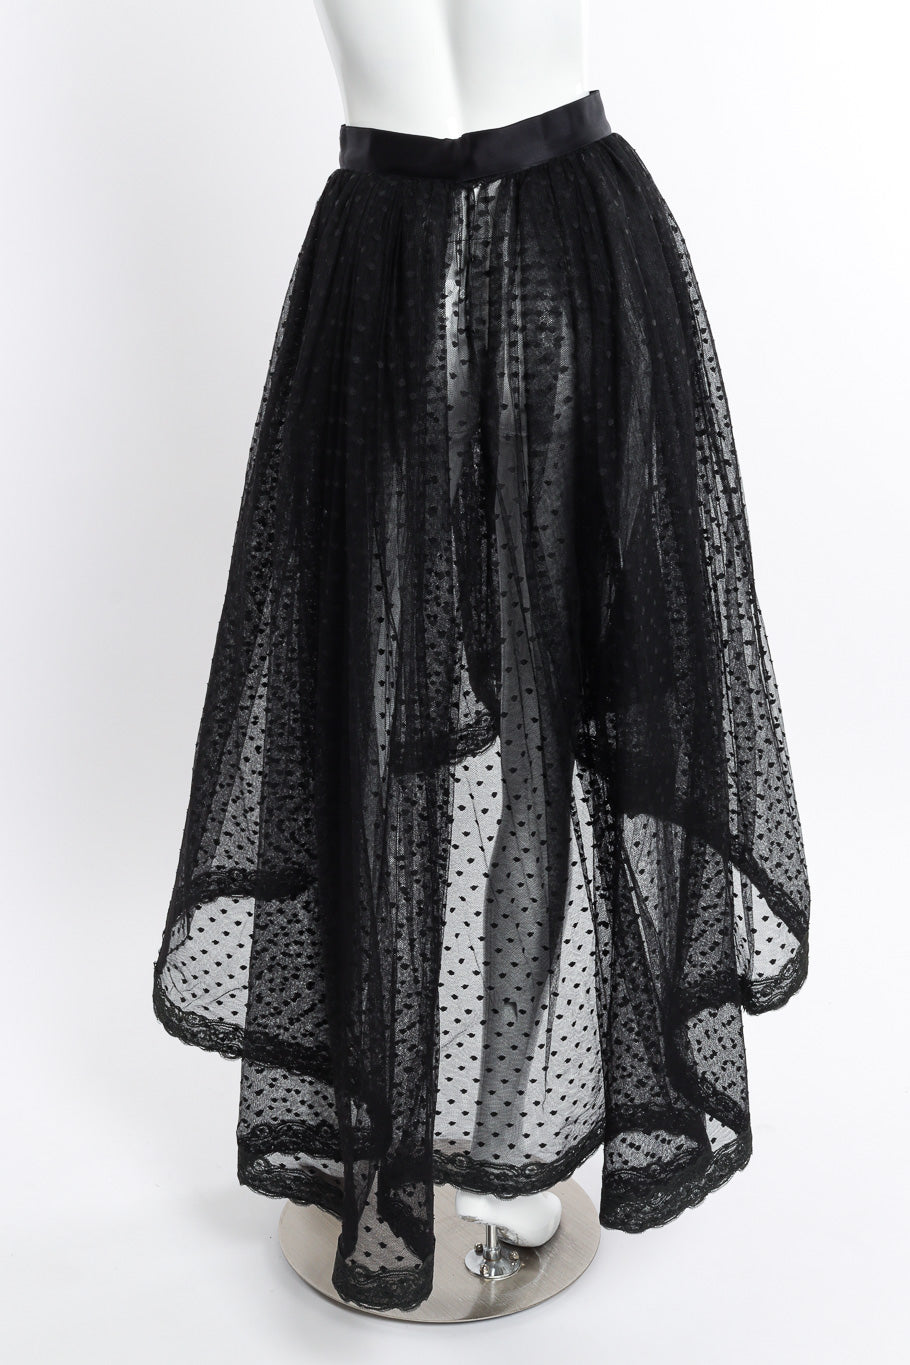 Vintage Bill Blass Polka Dot Tulle Skirt back on mannequin @recessla